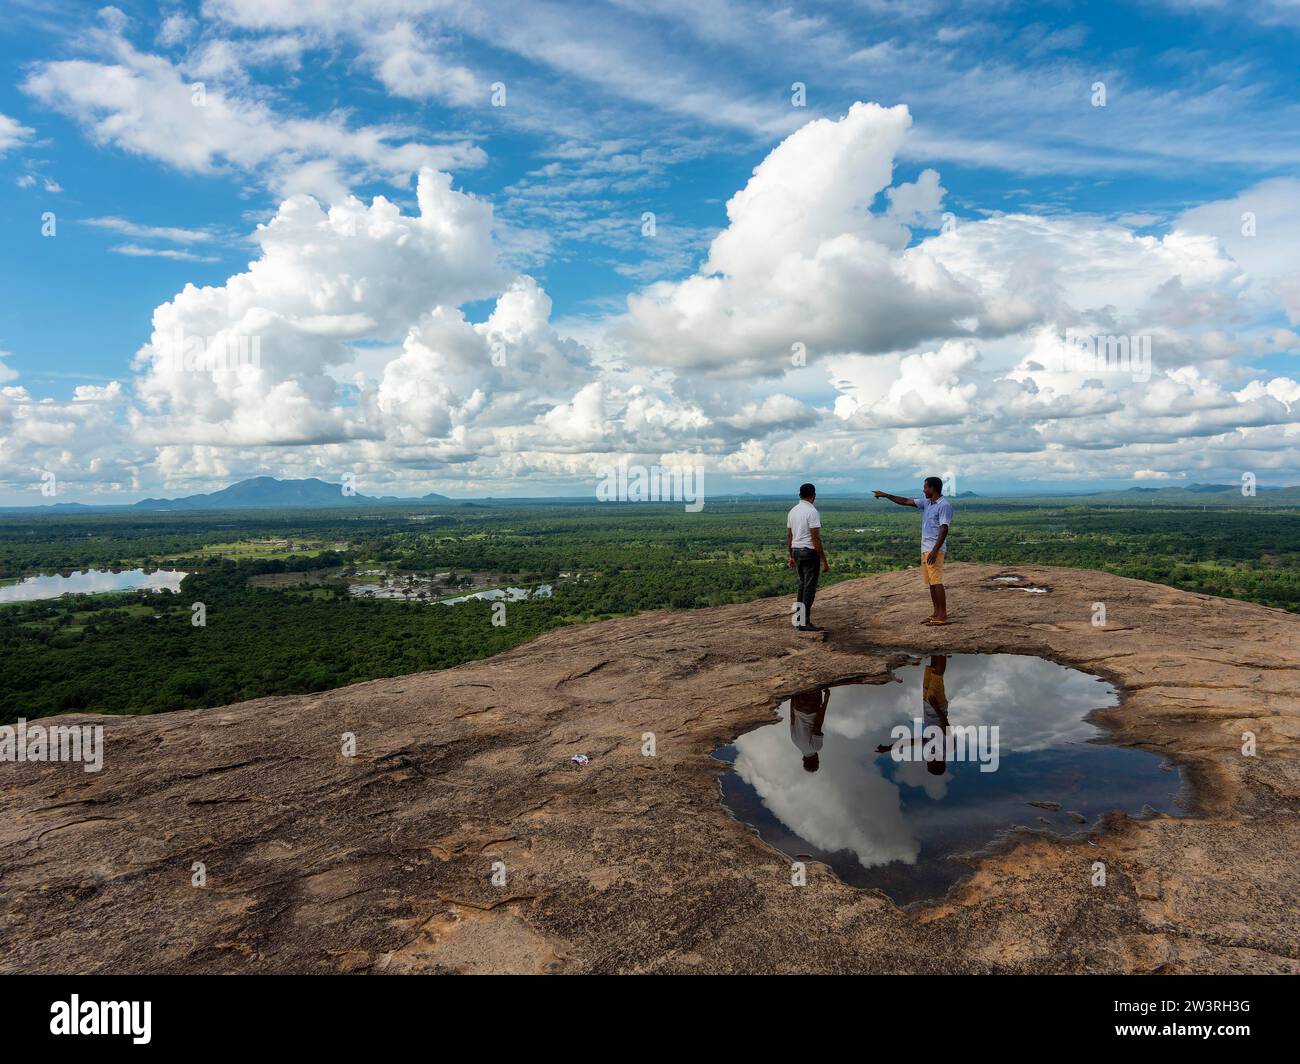 Uomini in piedi sulle rocce, riflessi in una pozzanghera, vista del paesaggio, Pidurangala, Sri Lanka Foto Stock